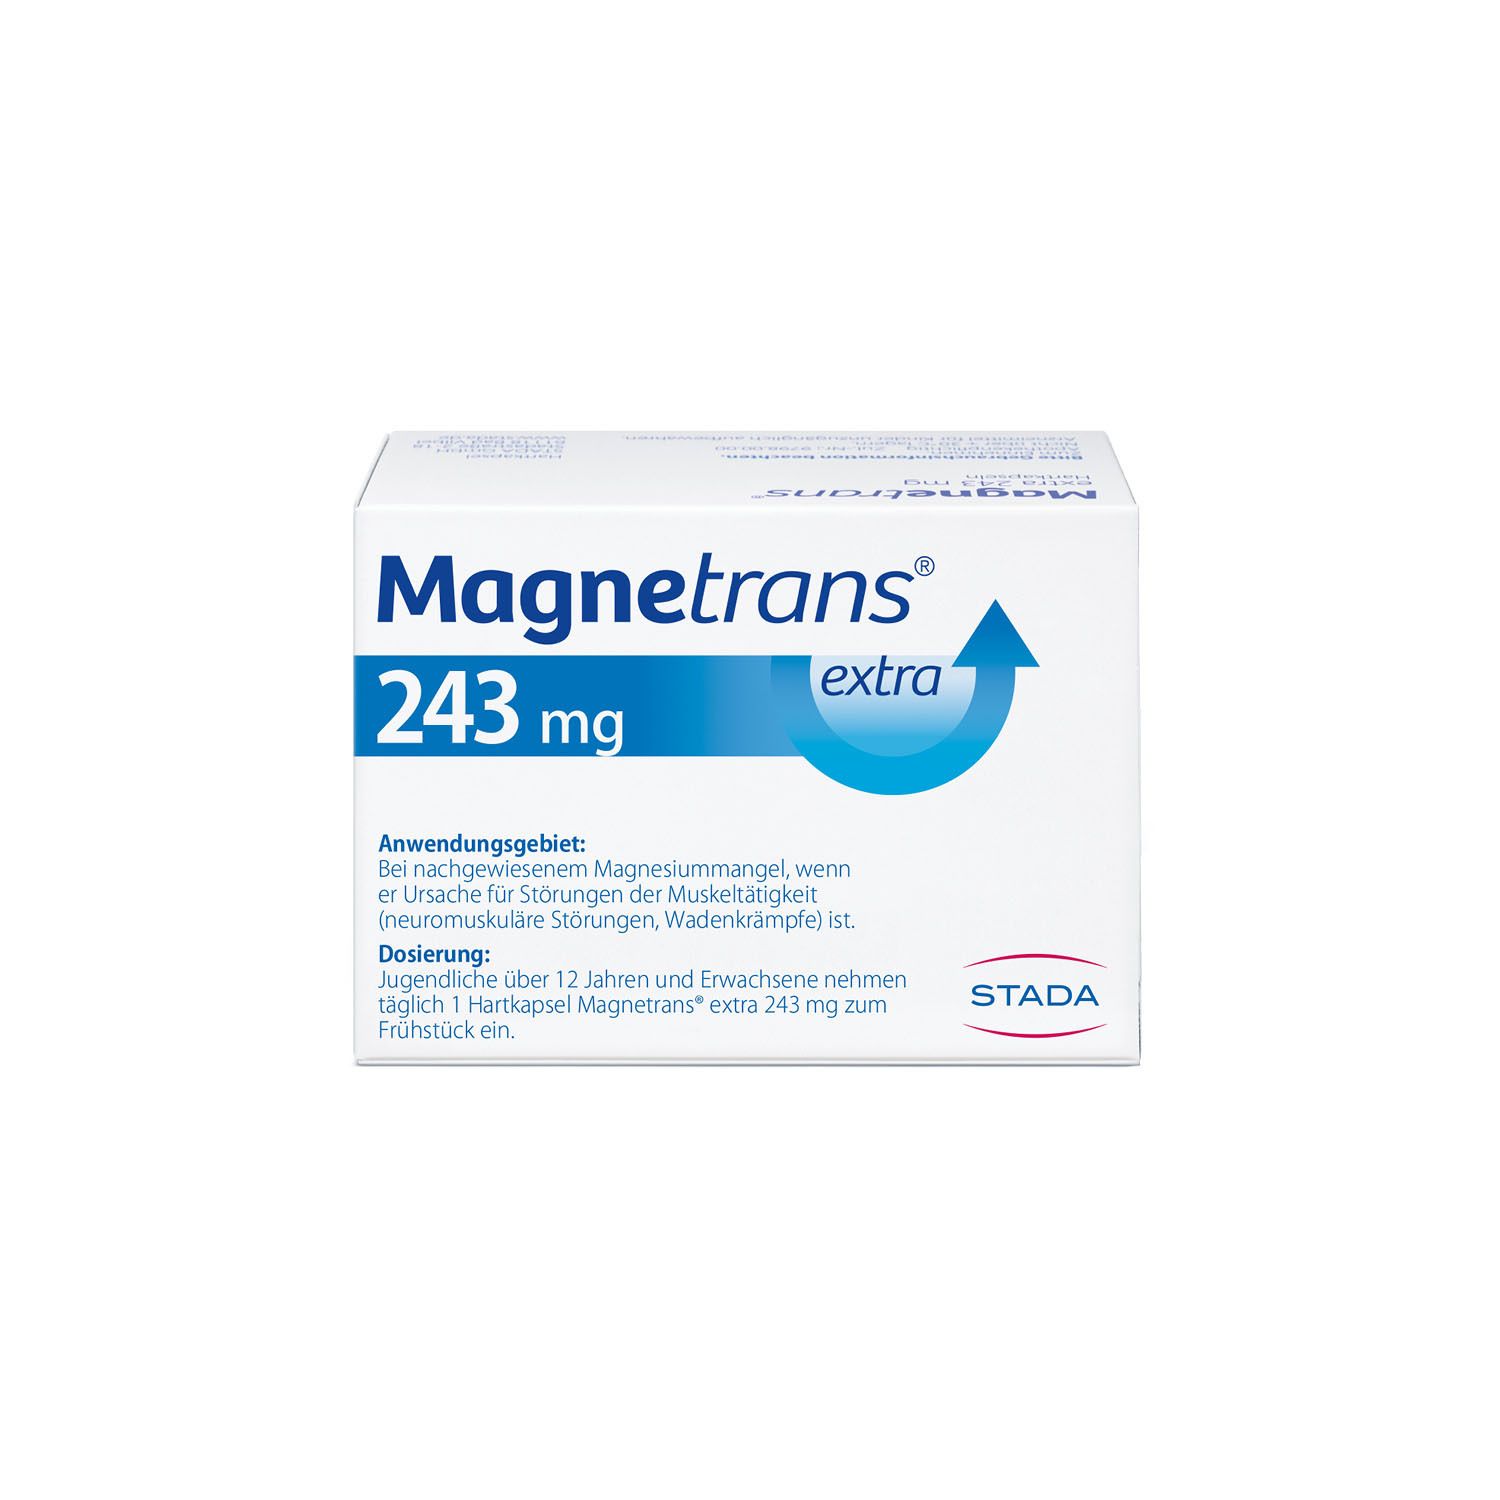 Magnetrans® extra 243 mg - Magnesiumkapseln für eine schnelle Hilfe bei Muskel- und Wadenkrämpfen bei nachgewiesenem Magnesiummangel